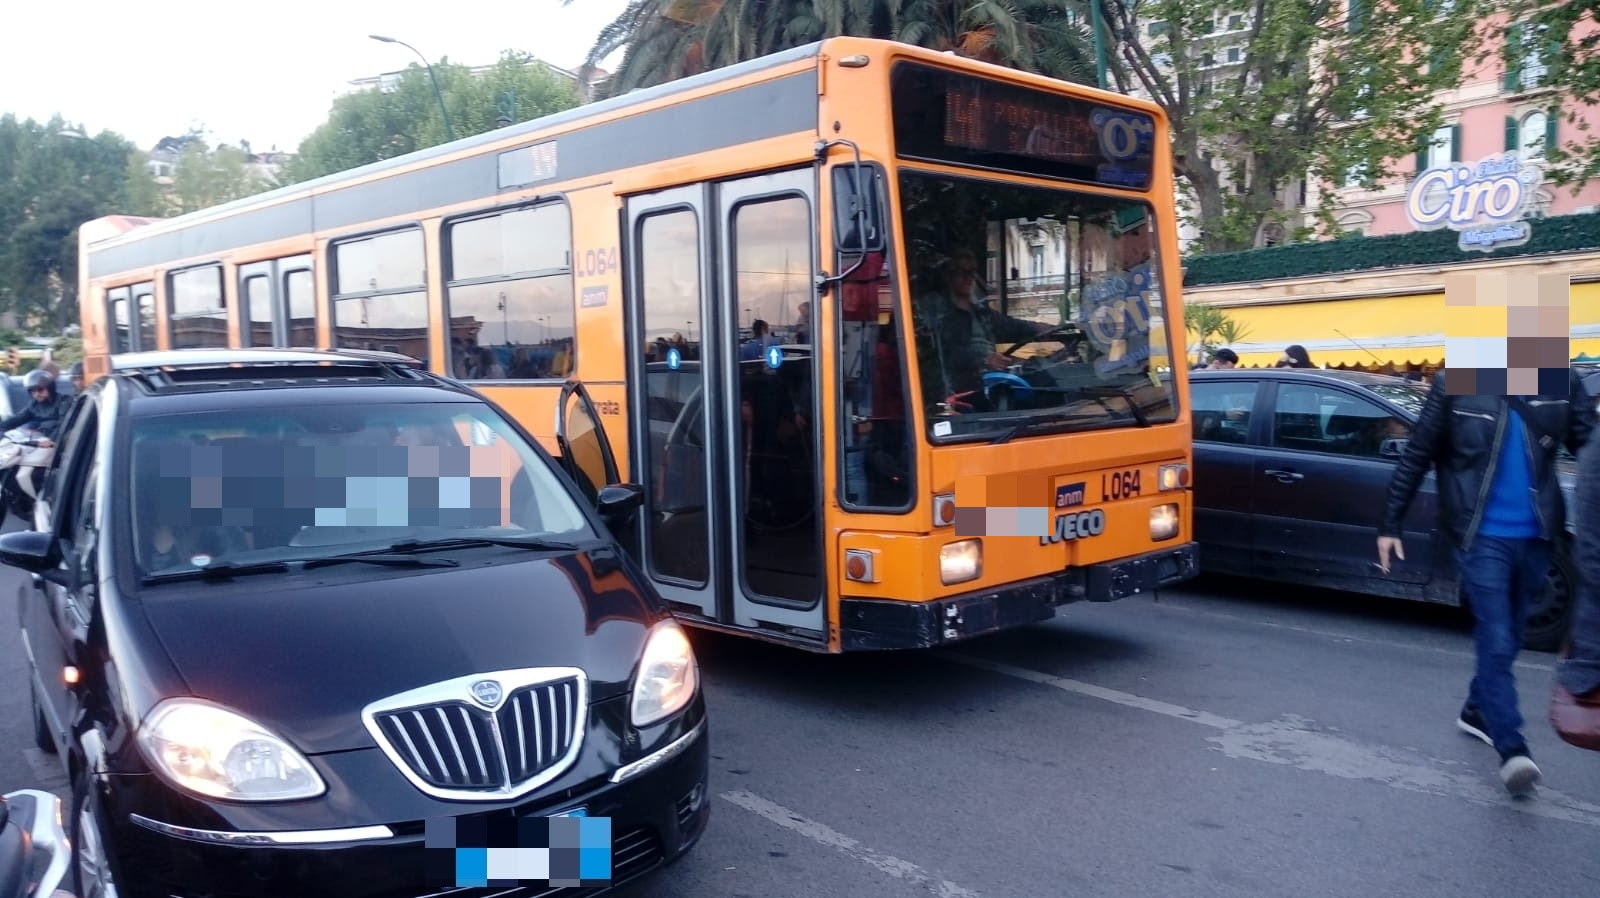 Sosta selvaggia blocca autobus di linea a Napoli, traffico e disagi per i viaggiatori. I Verdi: ‘Malcostume vergognoso’﻿